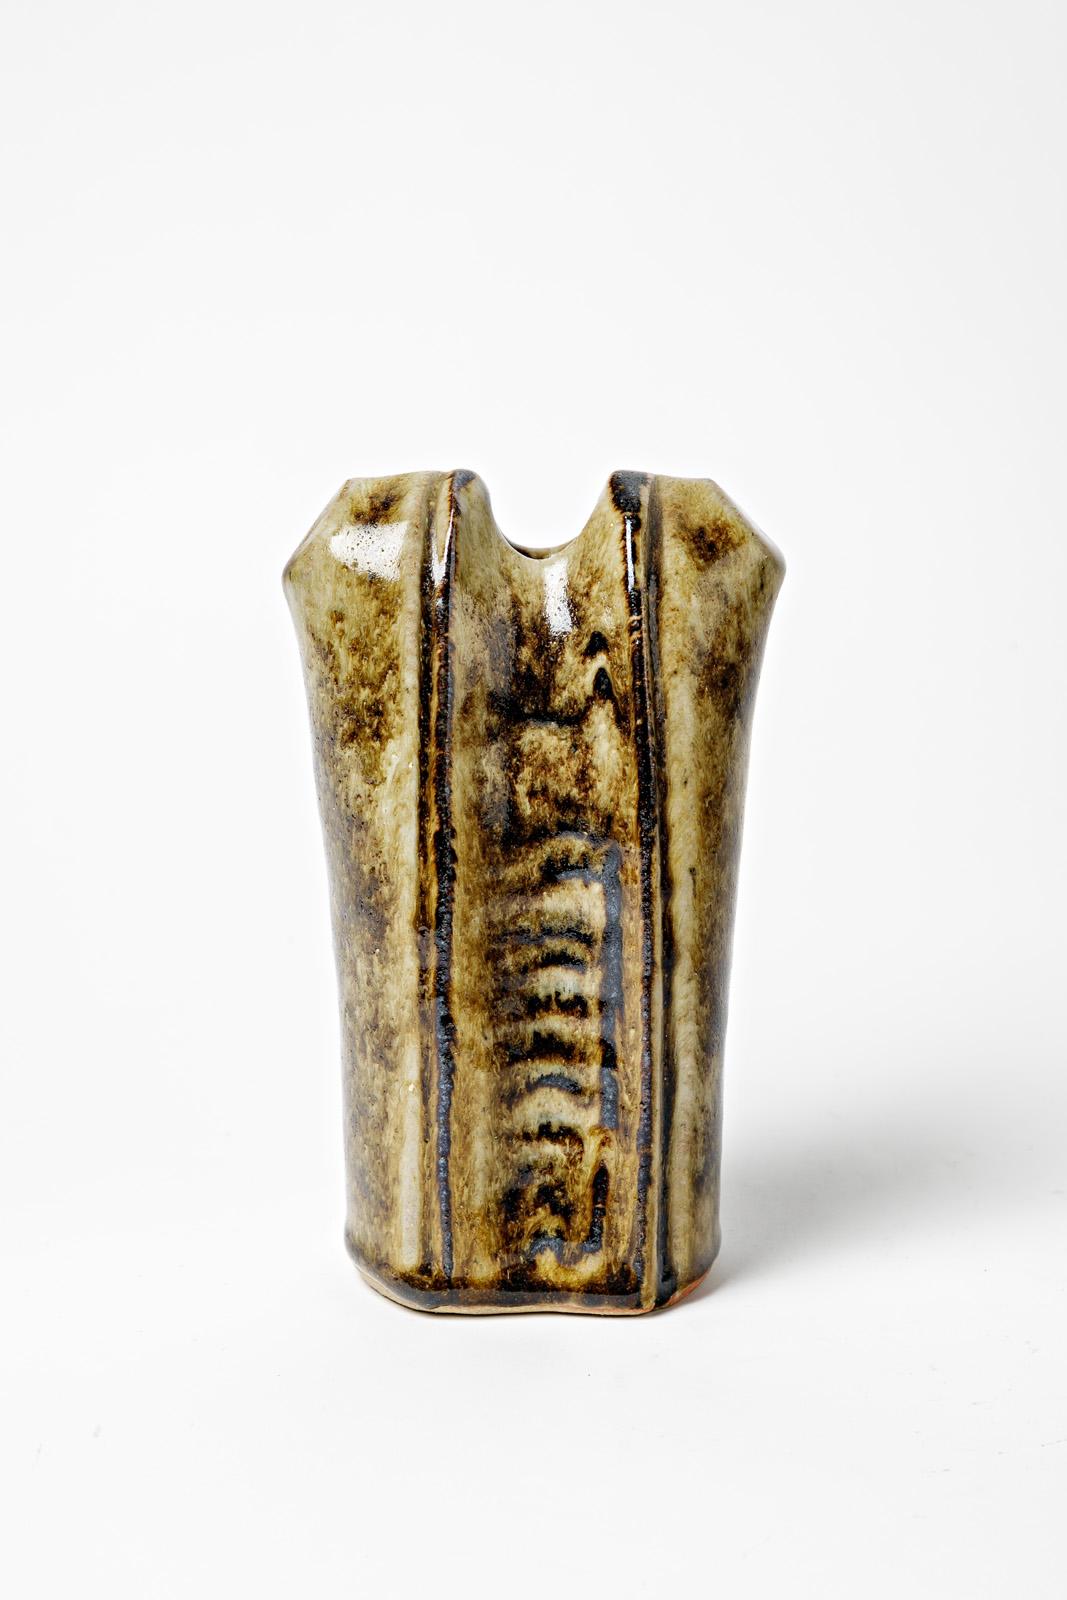 Robert Héraud - La Borne

Vase abstrait en céramique grès réalisé vers 1970

Condition originale parfaite.

Signé sous la base

Mesures : Hauteur 19 cm
Grand 12 cm.